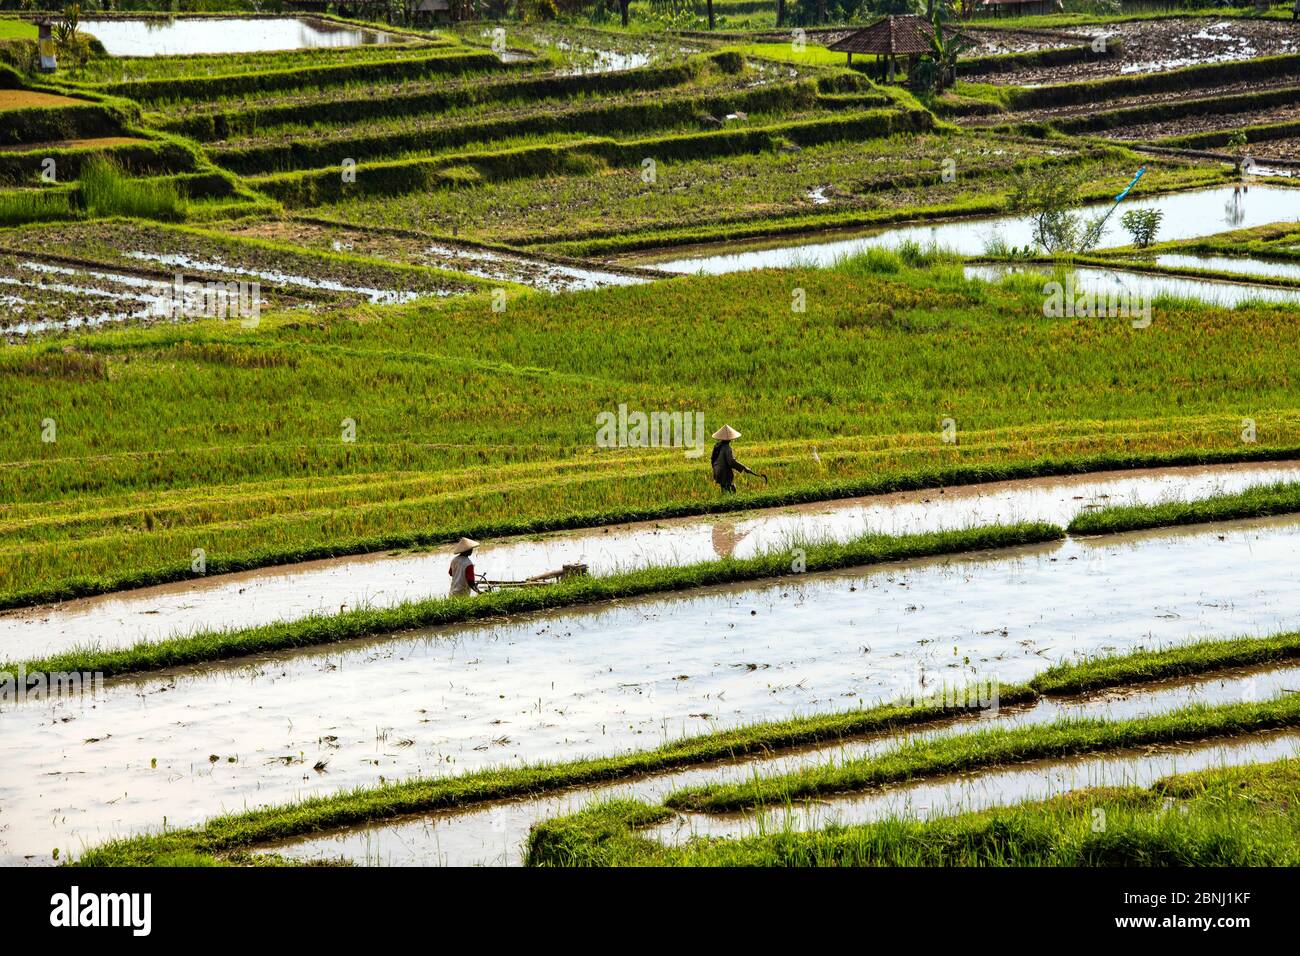 Two farmers working in rice paddies Jatiluwih Bali Indonesia Stock Photo